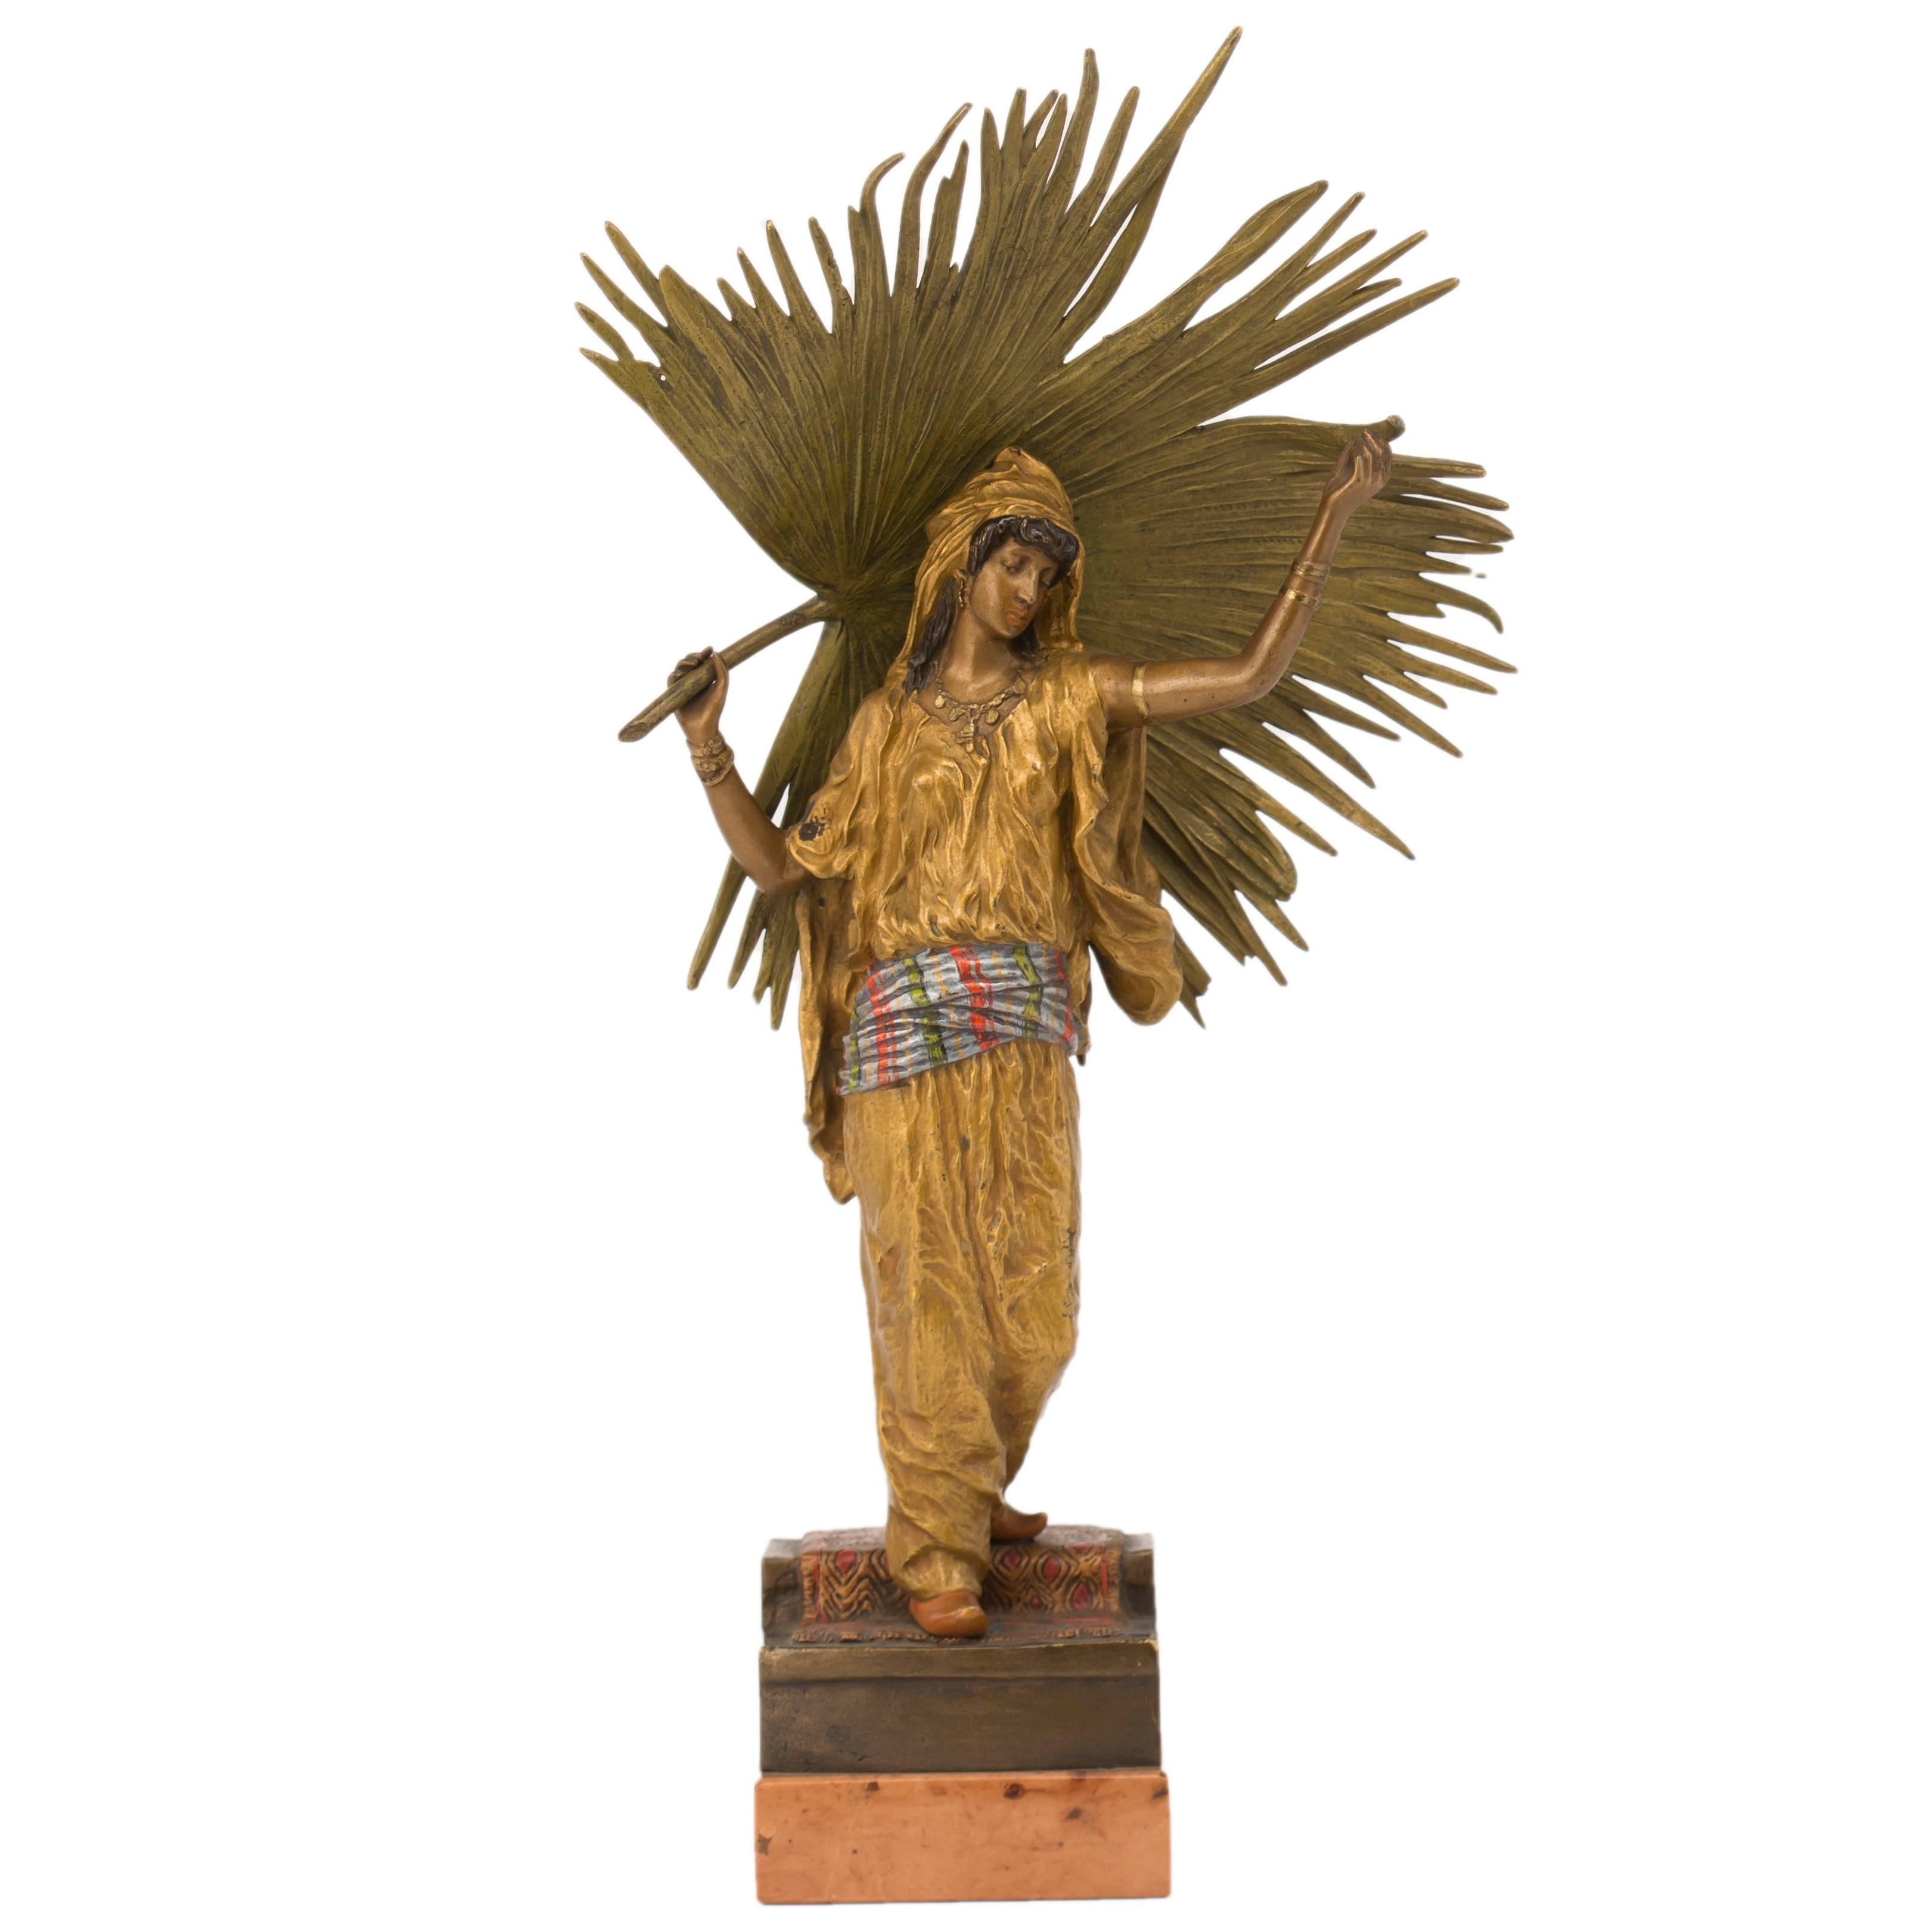 Vienna Bronze Sculpture "Palm Leaf Dancer" by Franz Xaver Bergman